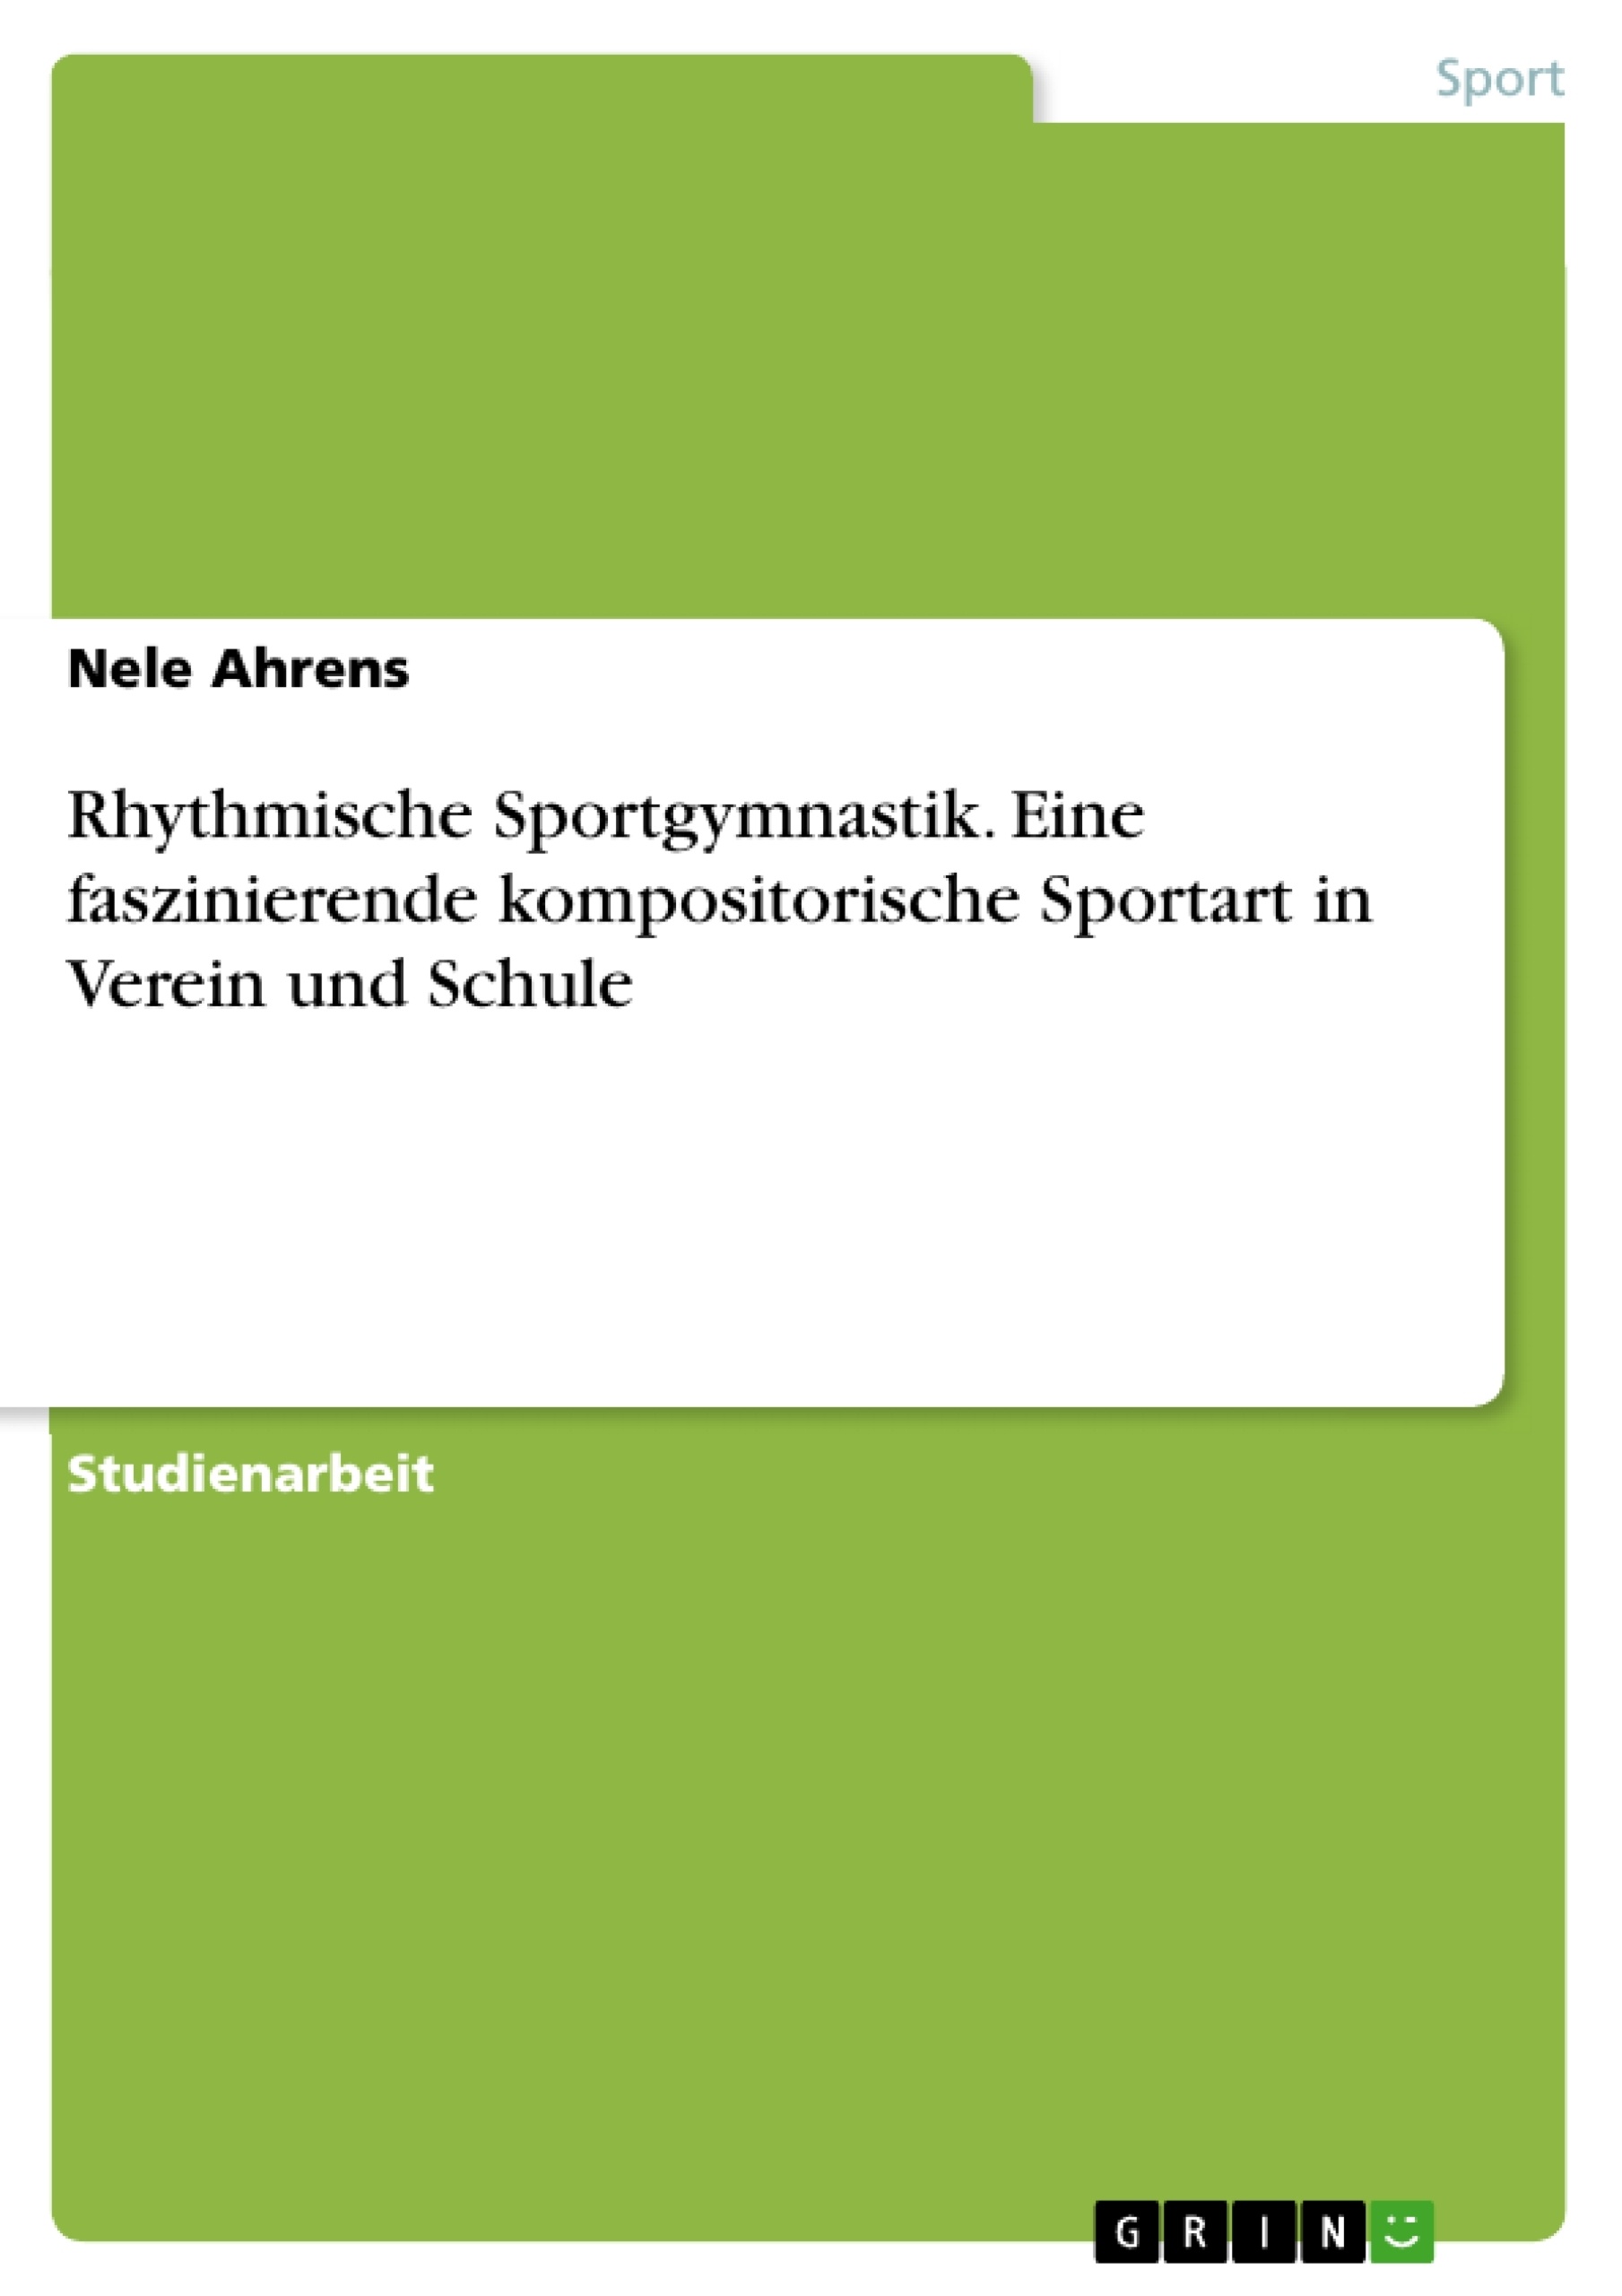 Título: Rhythmische Sportgymnastik. Eine faszinierende kompositorische Sportart in Verein und Schule